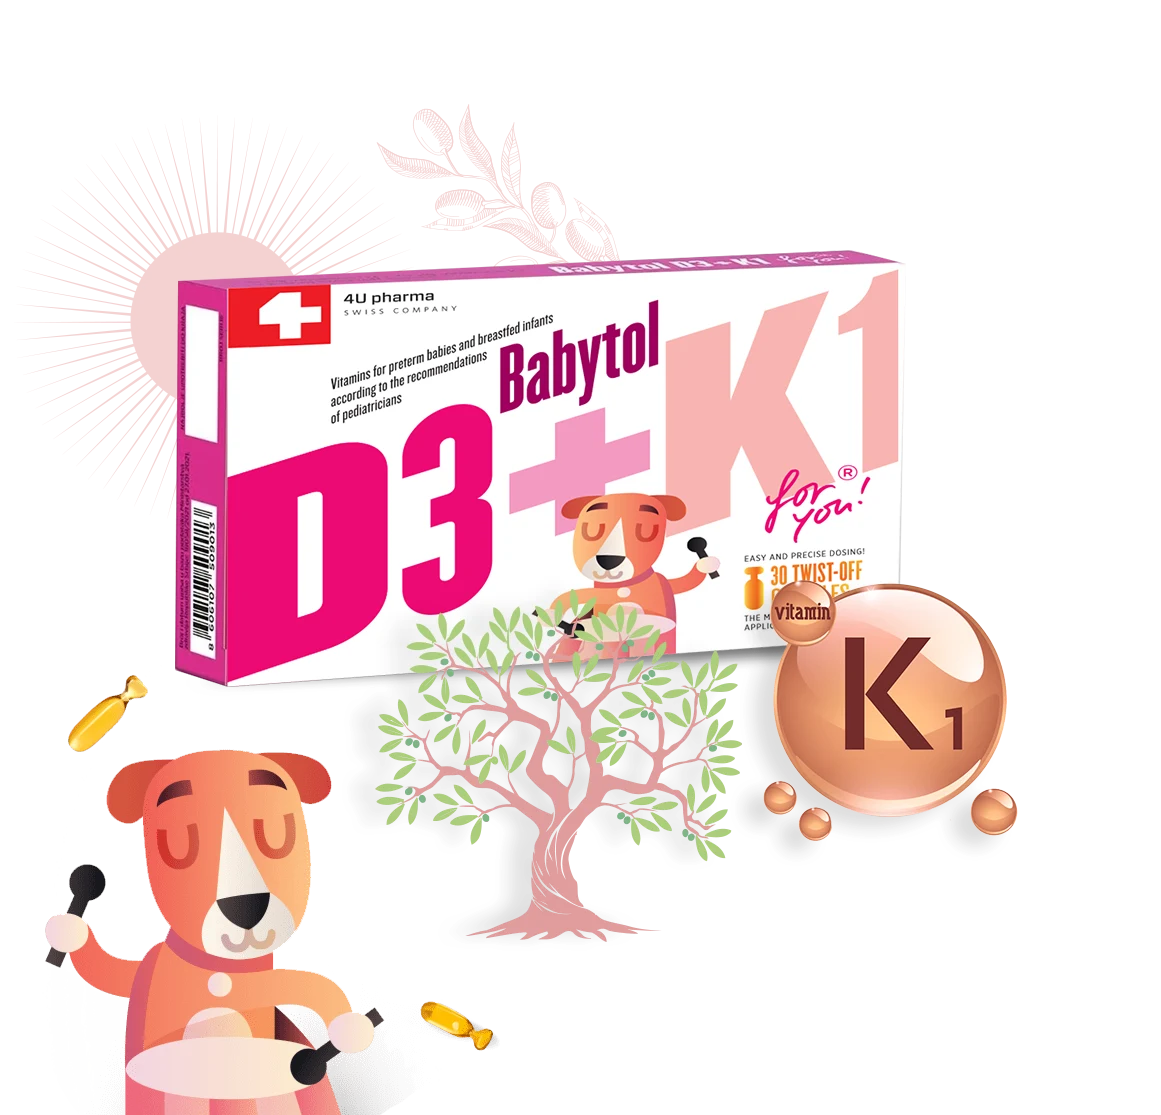 Babytol D3 + K1 for you!